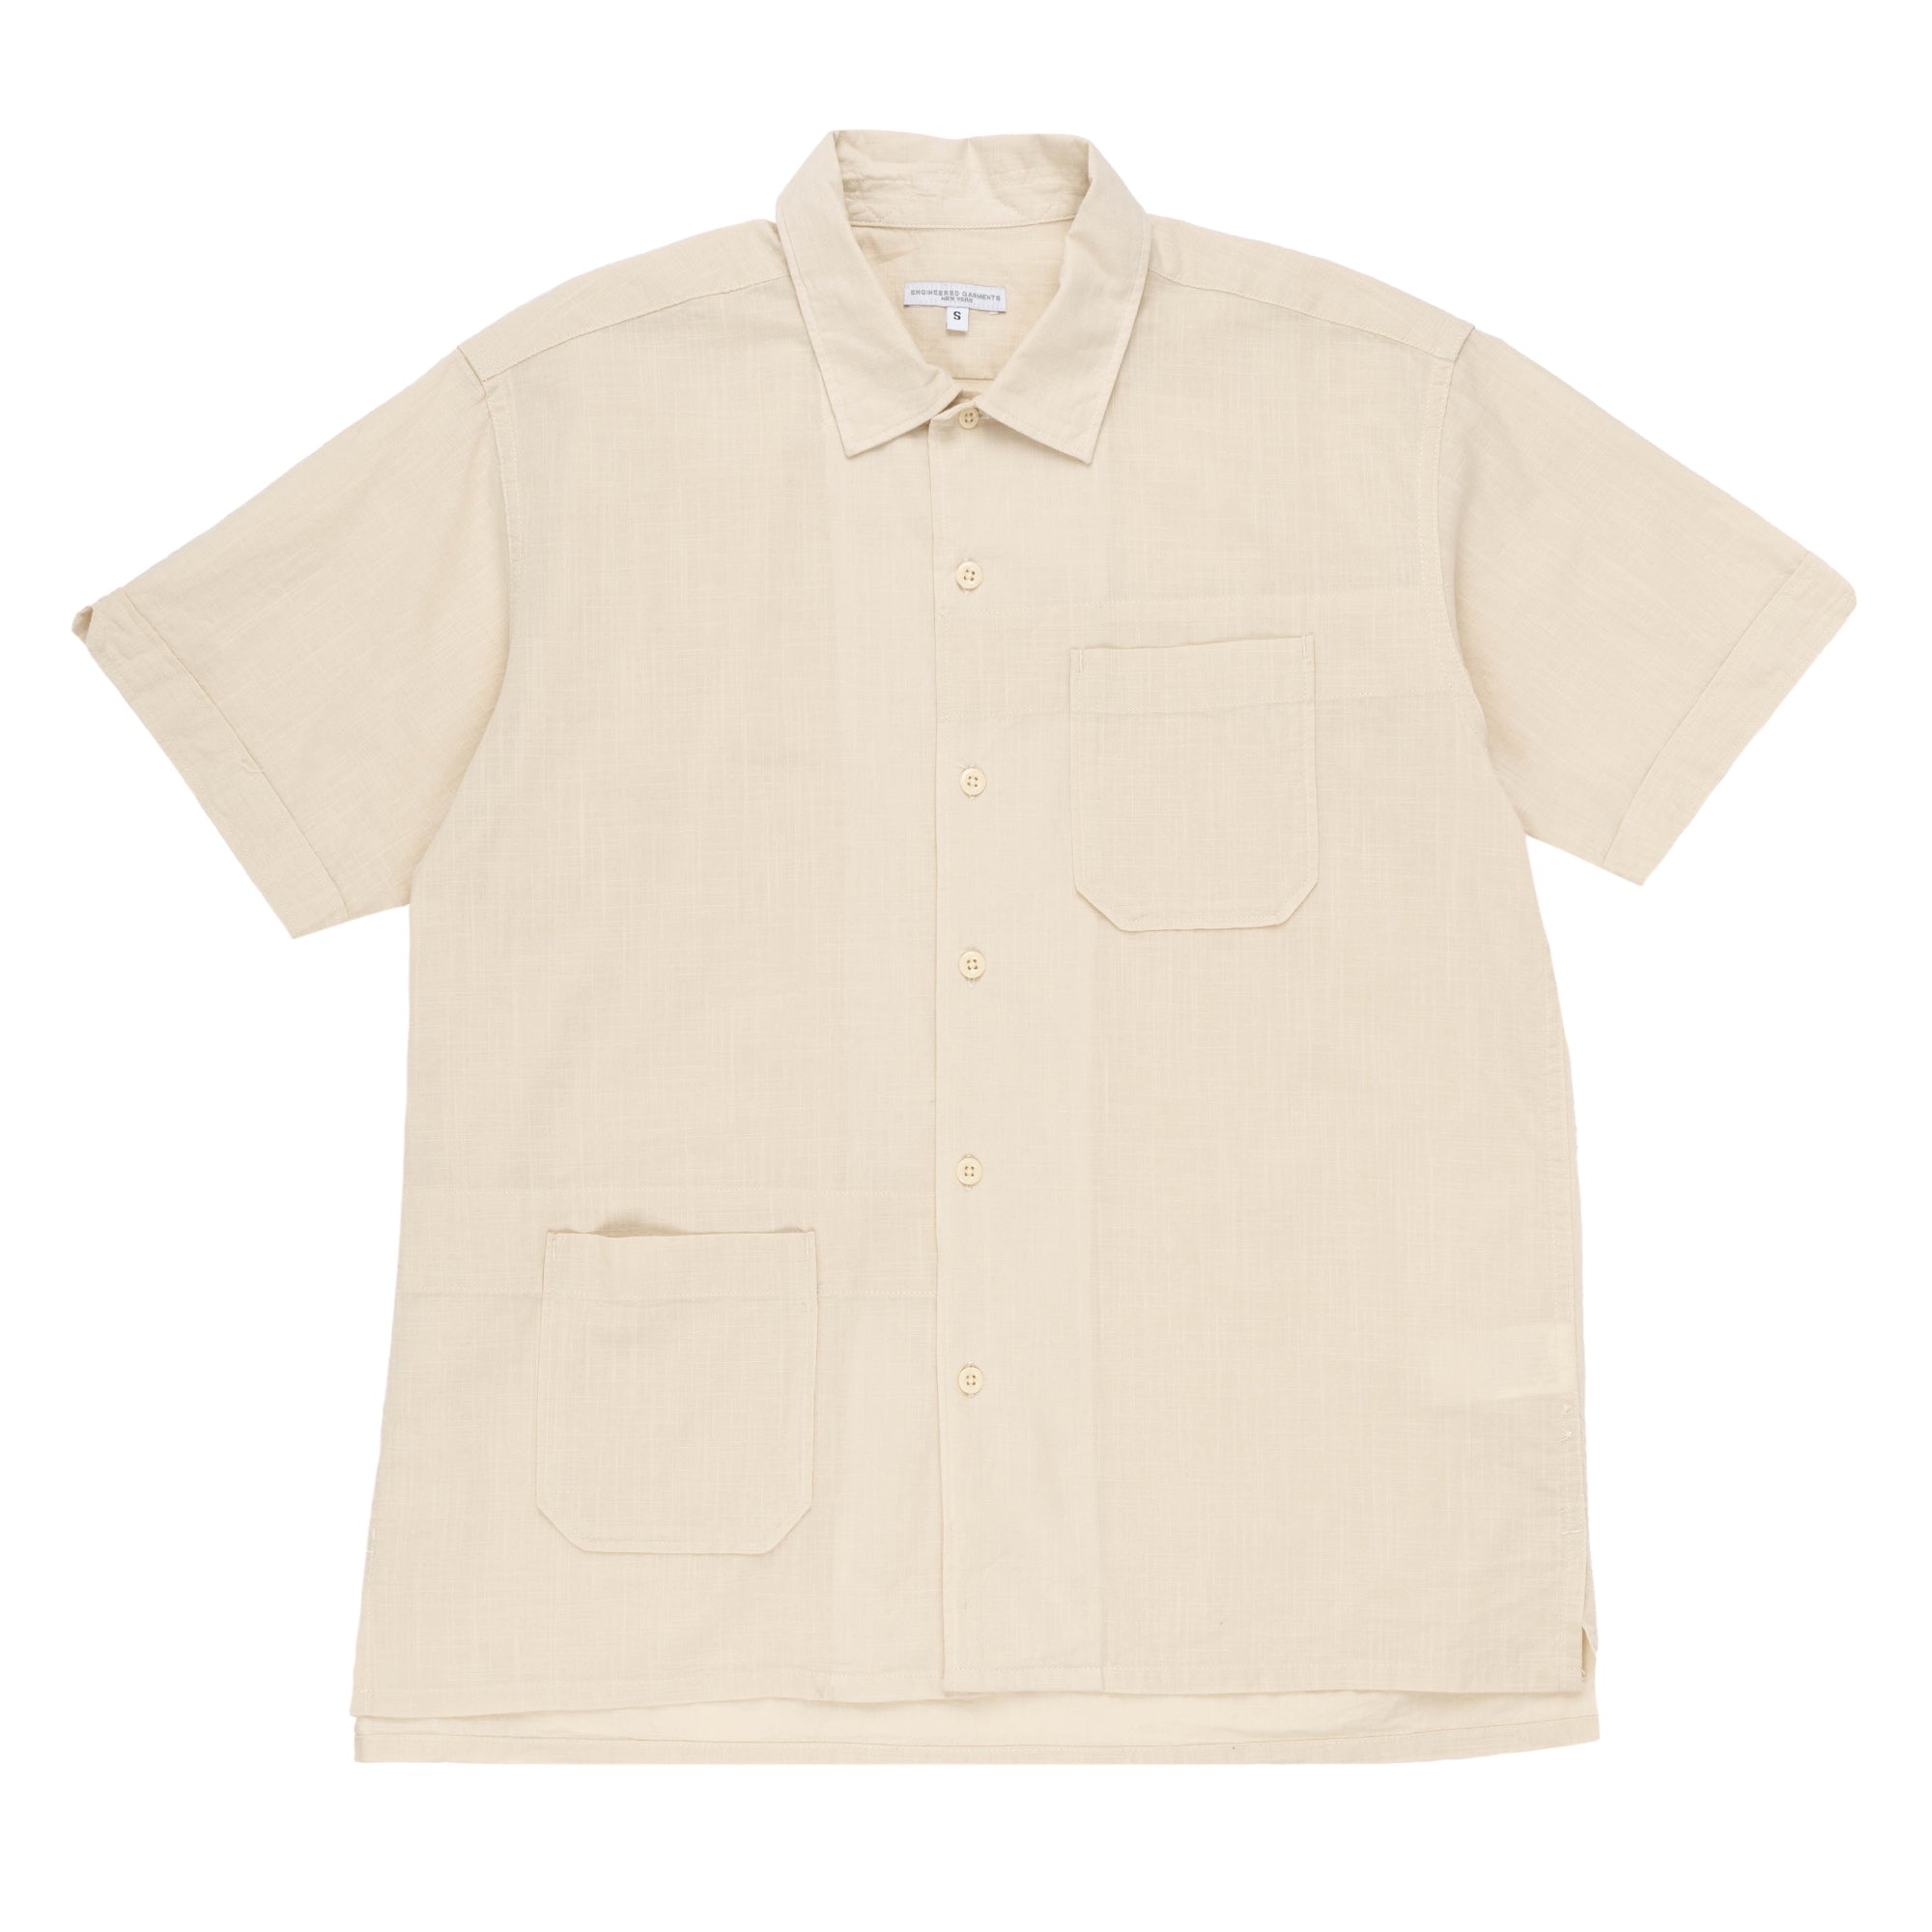 EG Camp Shirt Cotton Handkerchief 24S1A004